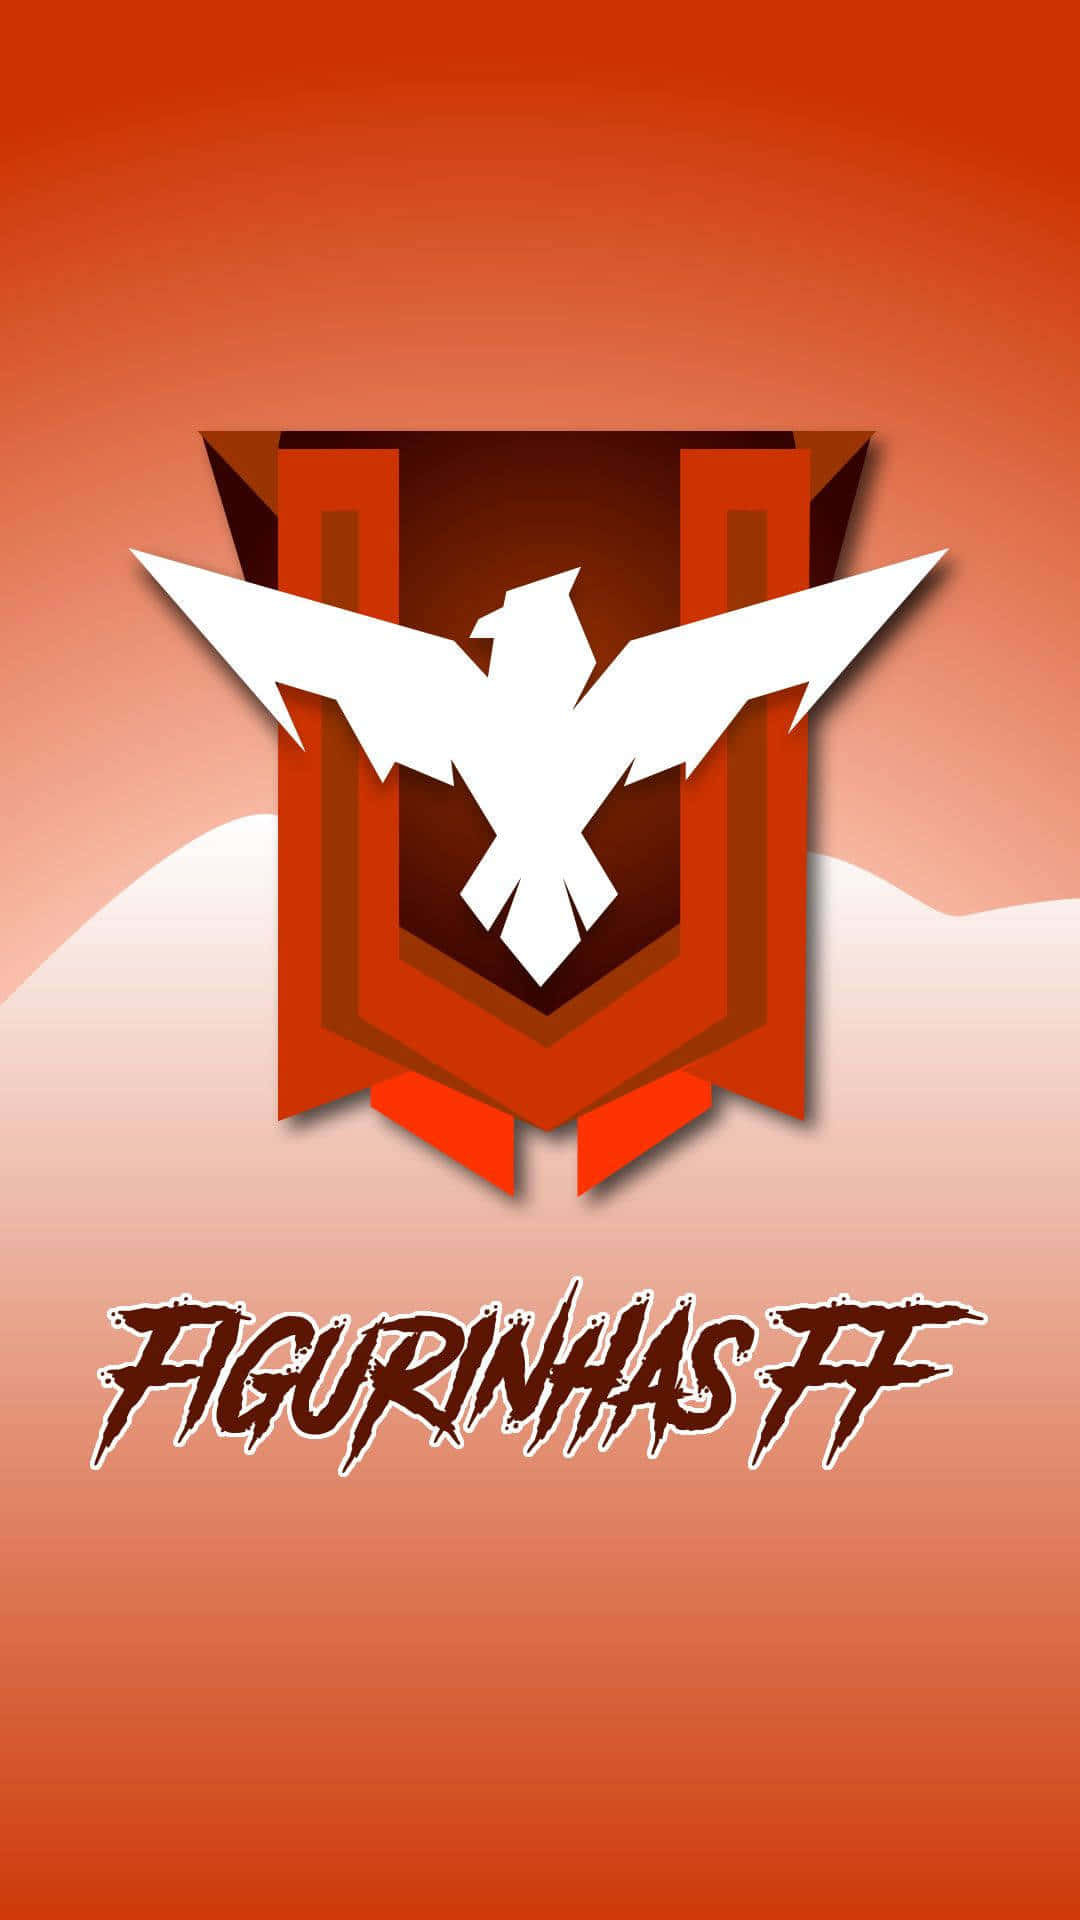 A Logo For Figinhas F